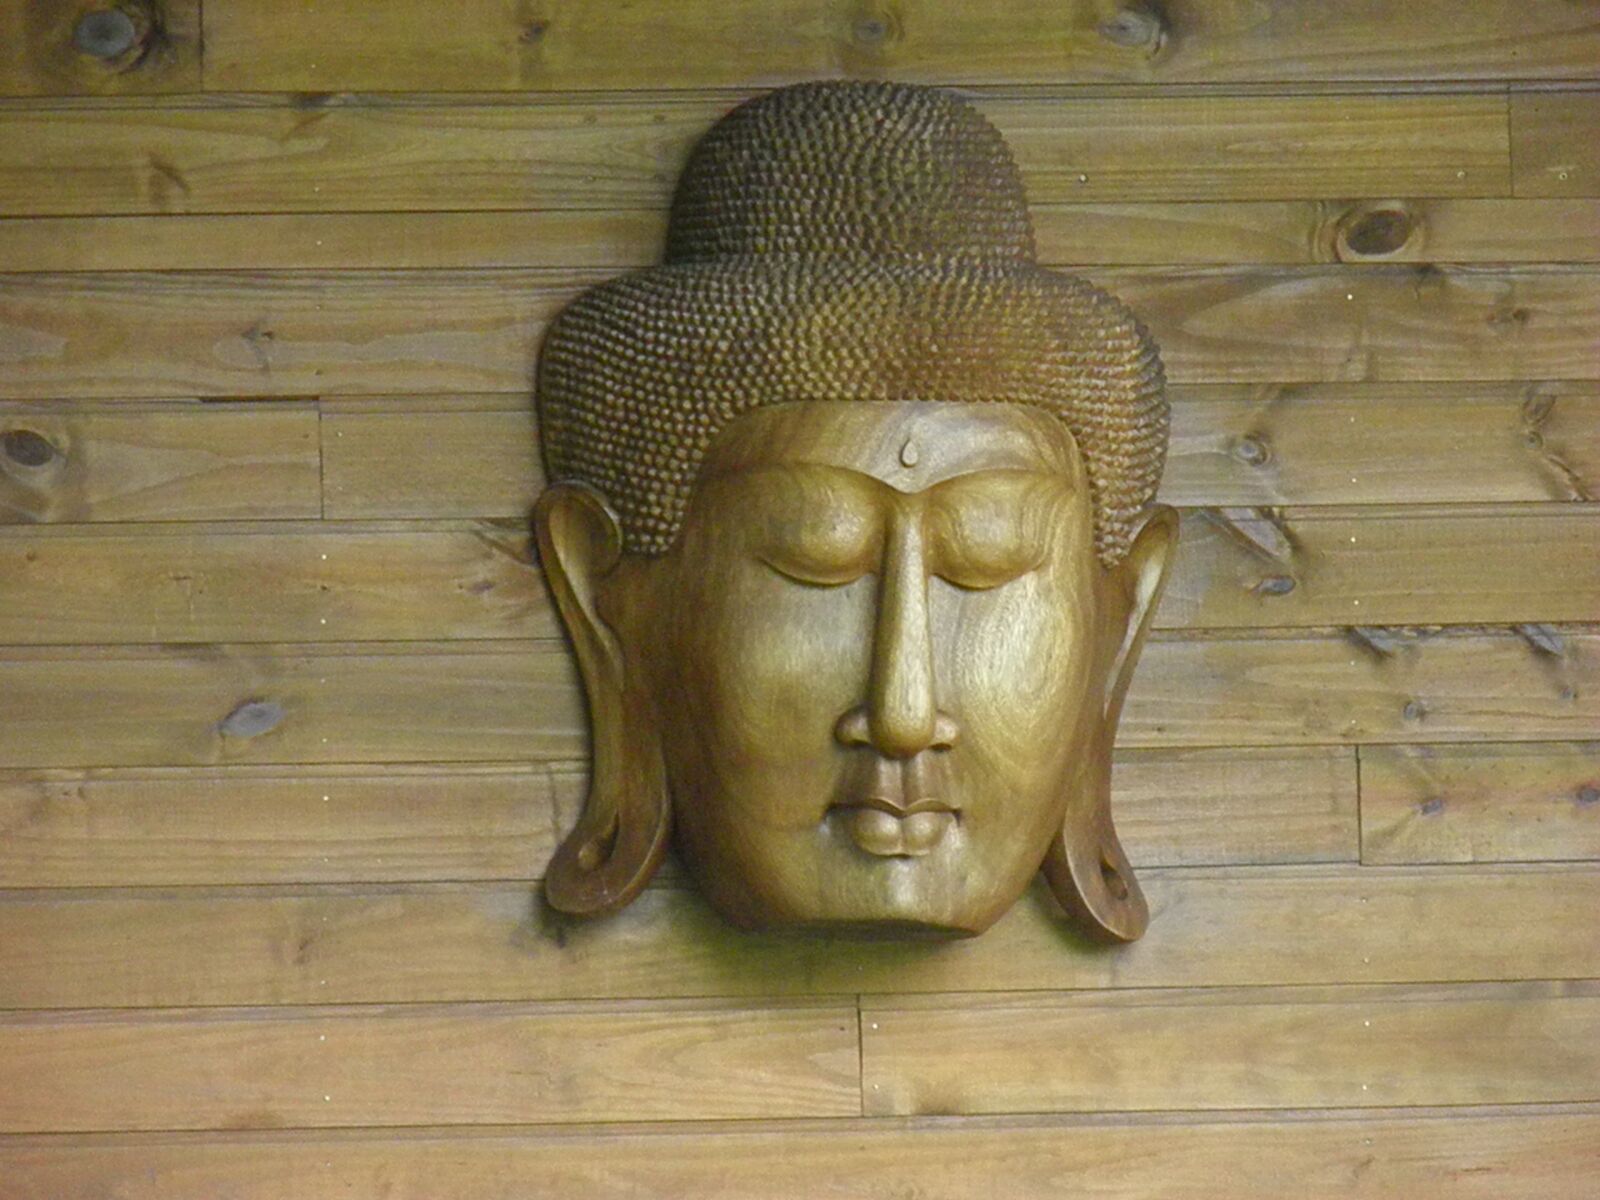 Olympus SP800UZ sample photo. Buddha, yoga, meditation photography